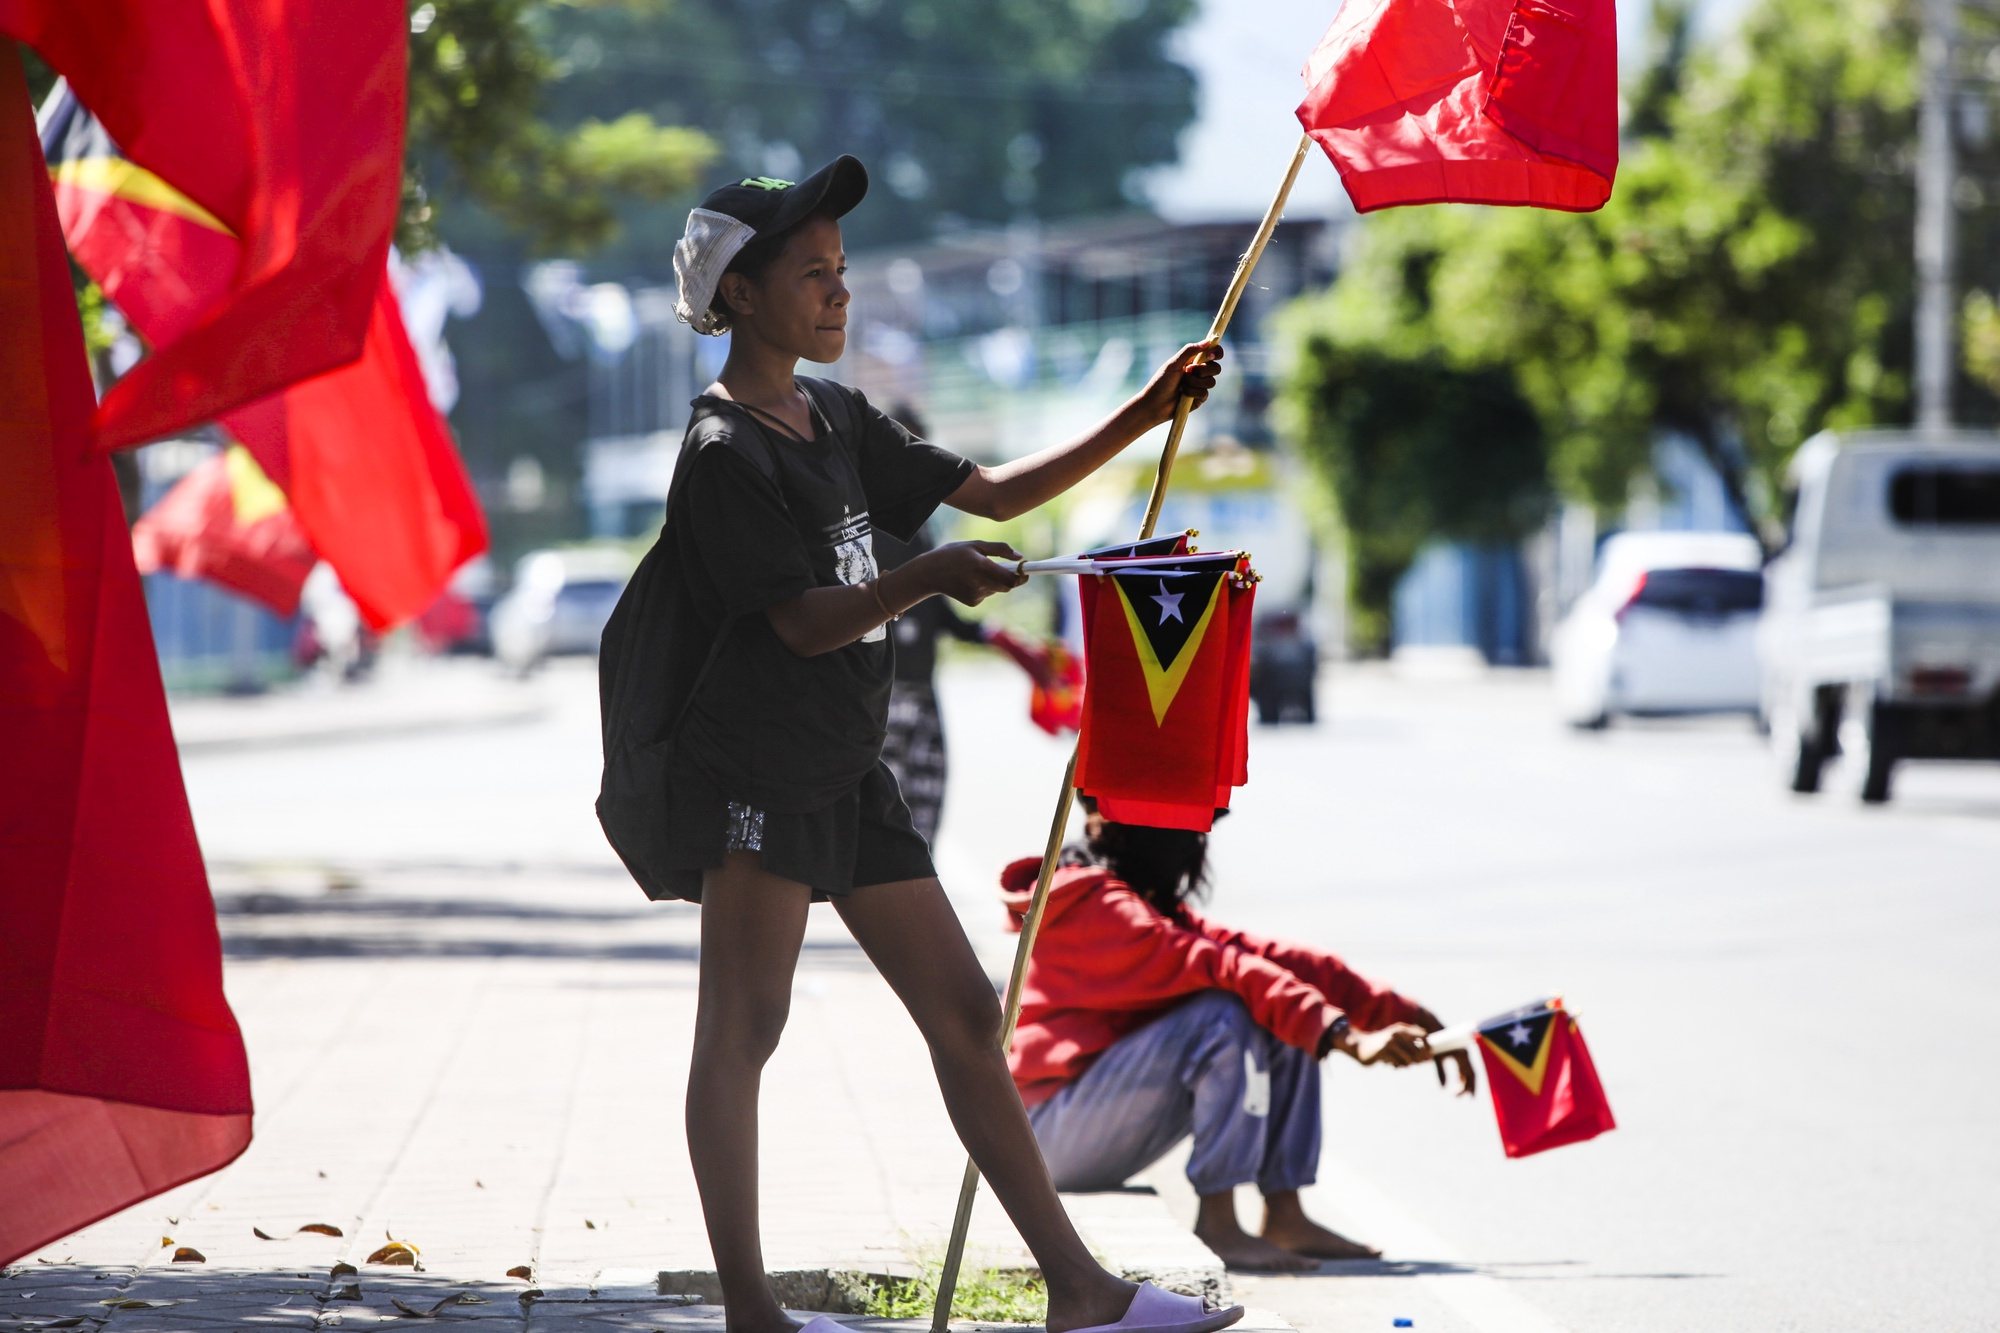 As cores da campanha para as legislativas chegaram a finalmente a Díli, depois de percorrer o país, numa semana crucial que junta a mobilização dos partidos às celebrações da Restauração da Independência de Timor-Leste. Dili, 14 de maio de 2023. (ACOMPANHA TEXTO DO DIA 15 DE MAIO DE 2023). ANTÓNIO SAMPAIO/LUSA